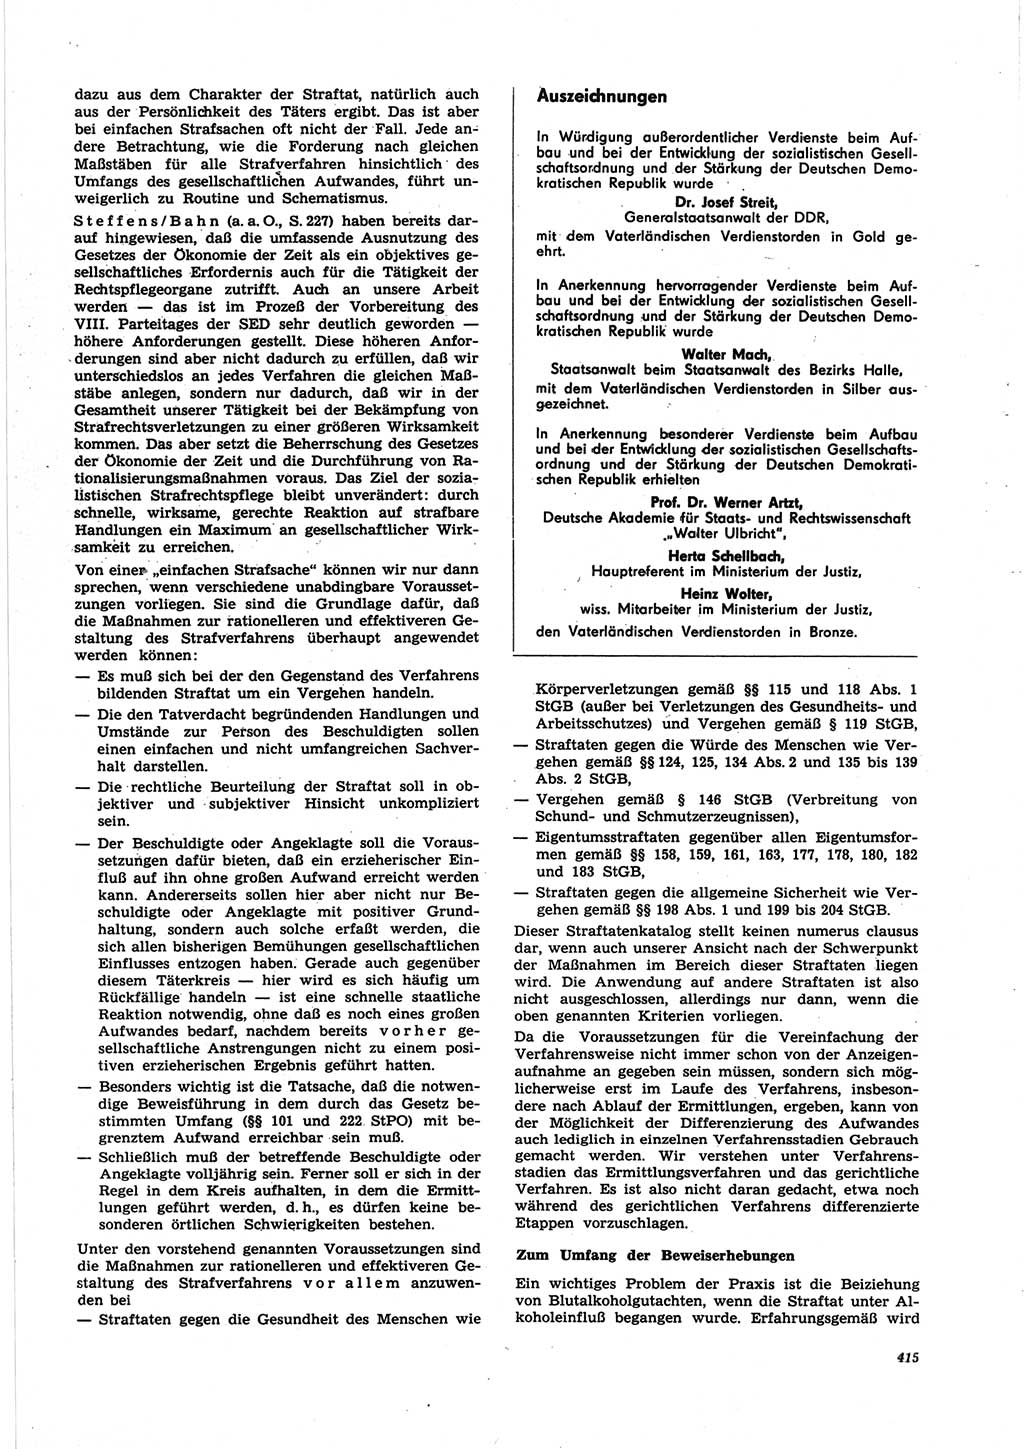 Neue Justiz (NJ), Zeitschrift für Recht und Rechtswissenschaft [Deutsche Demokratische Republik (DDR)], 25. Jahrgang 1971, Seite 415 (NJ DDR 1971, S. 415)